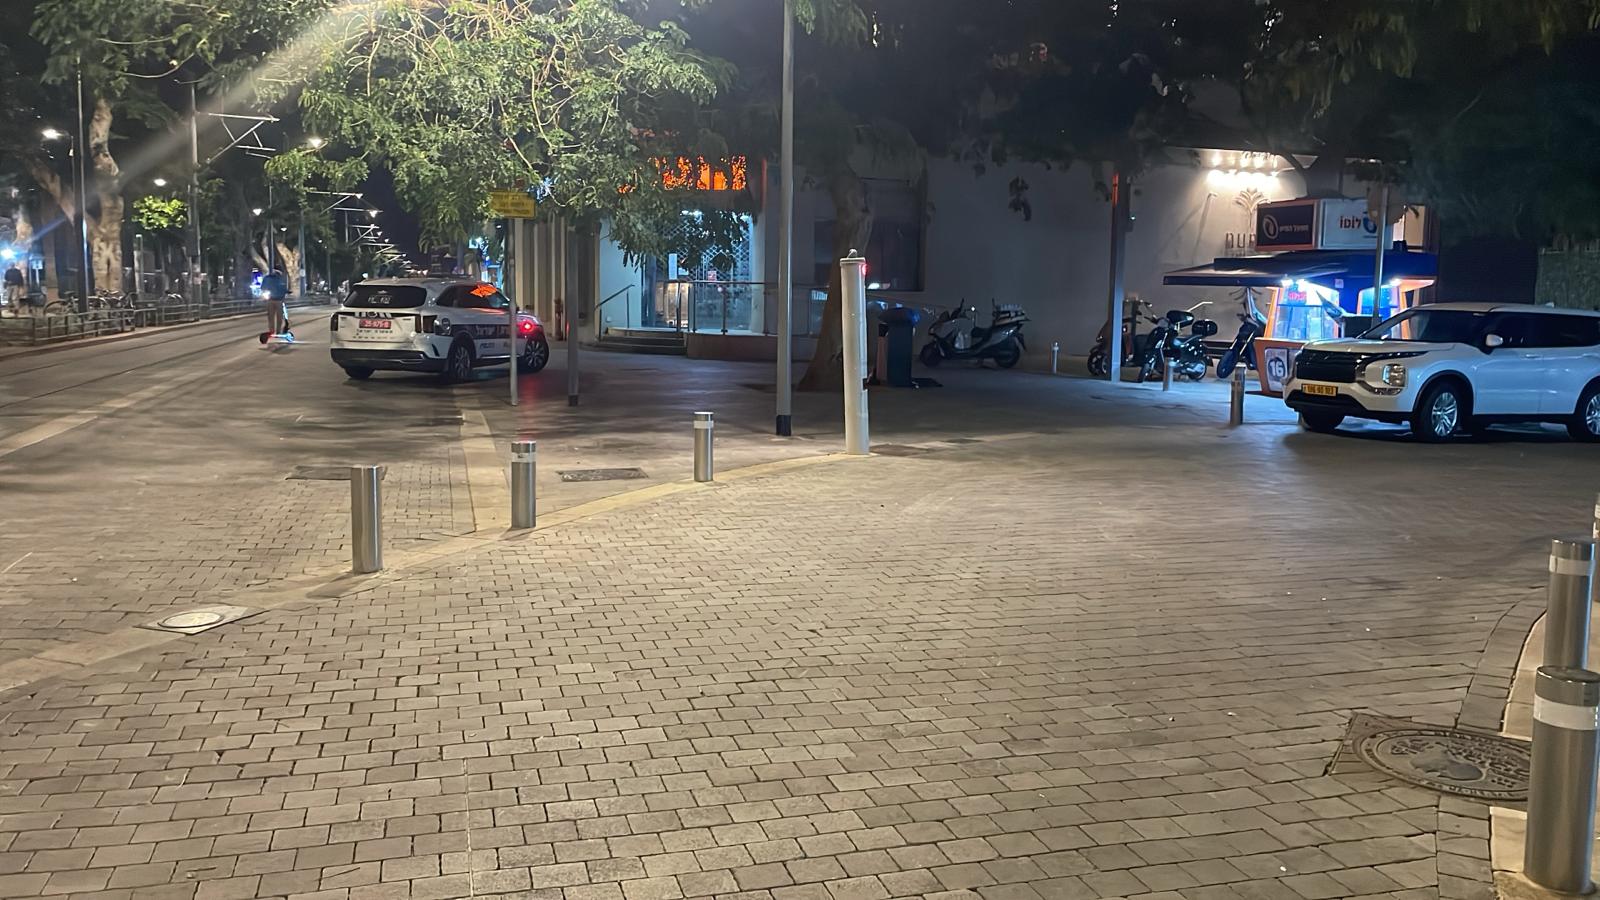 يافا: مصرع راكب دراجة سكوتر في شارع شديروت يروشالايم 